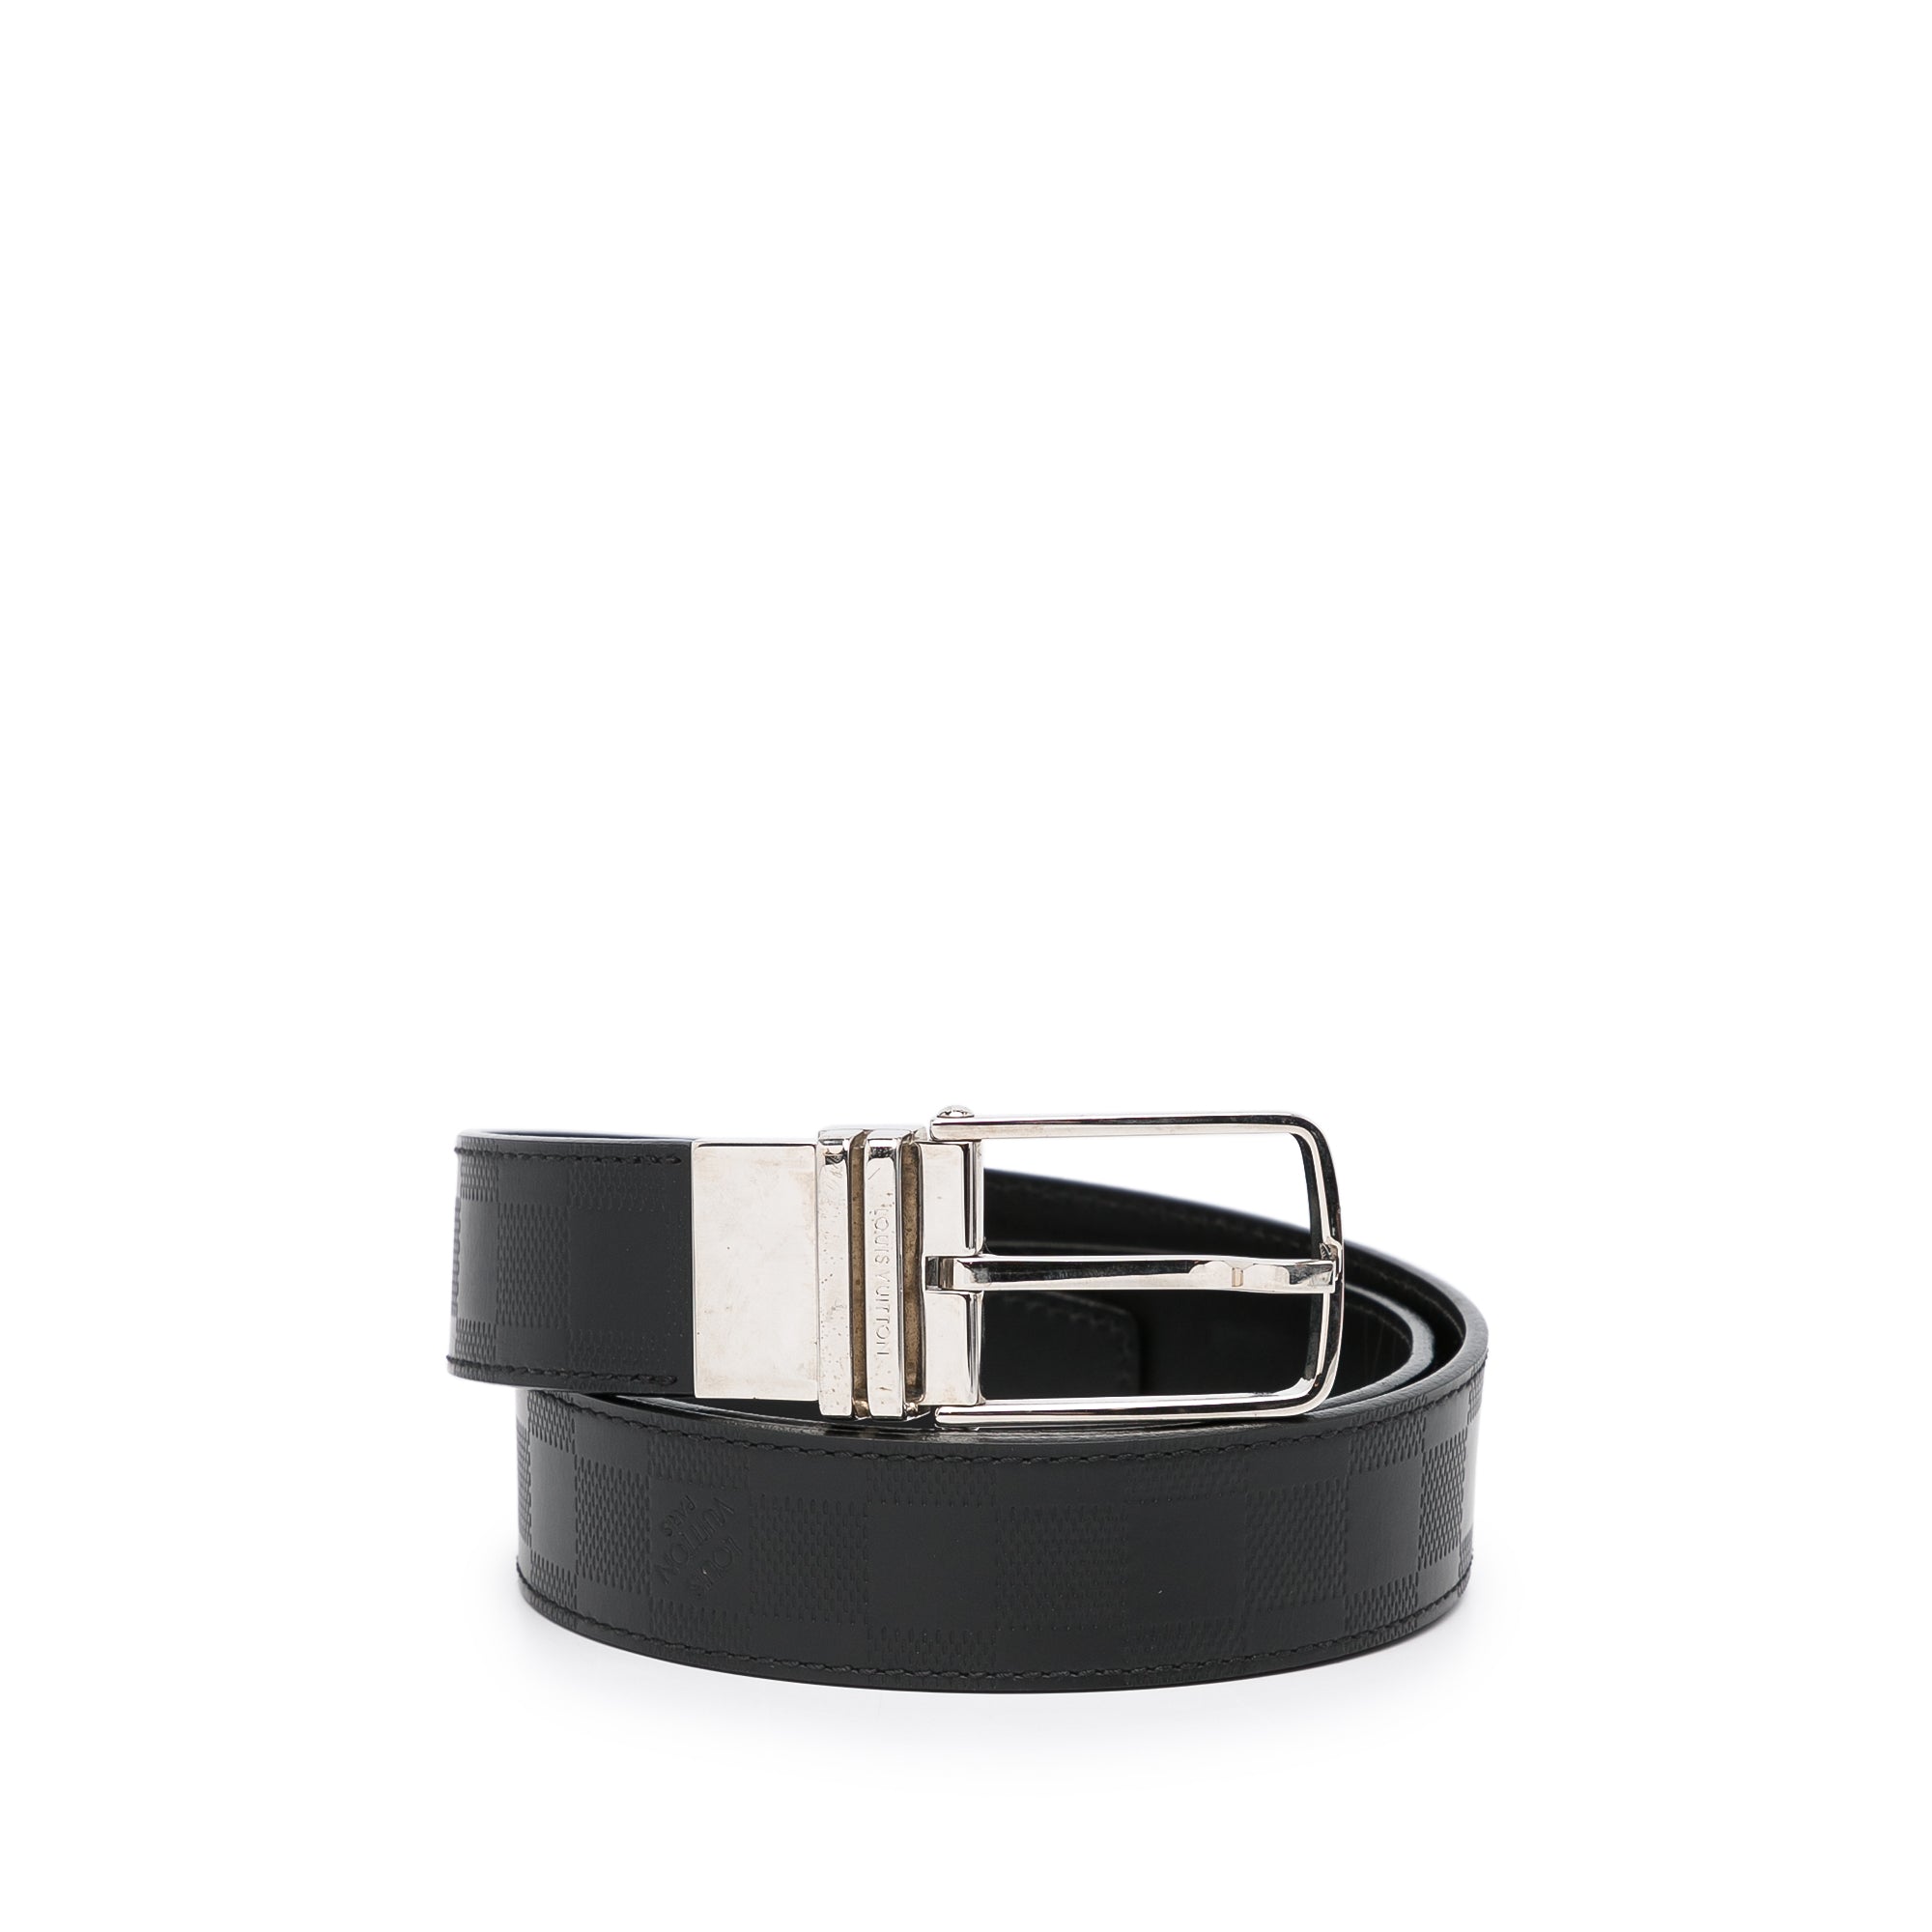 Mens Louis Vuitton Belt Black Damier LV Belt Authentic for Sale in